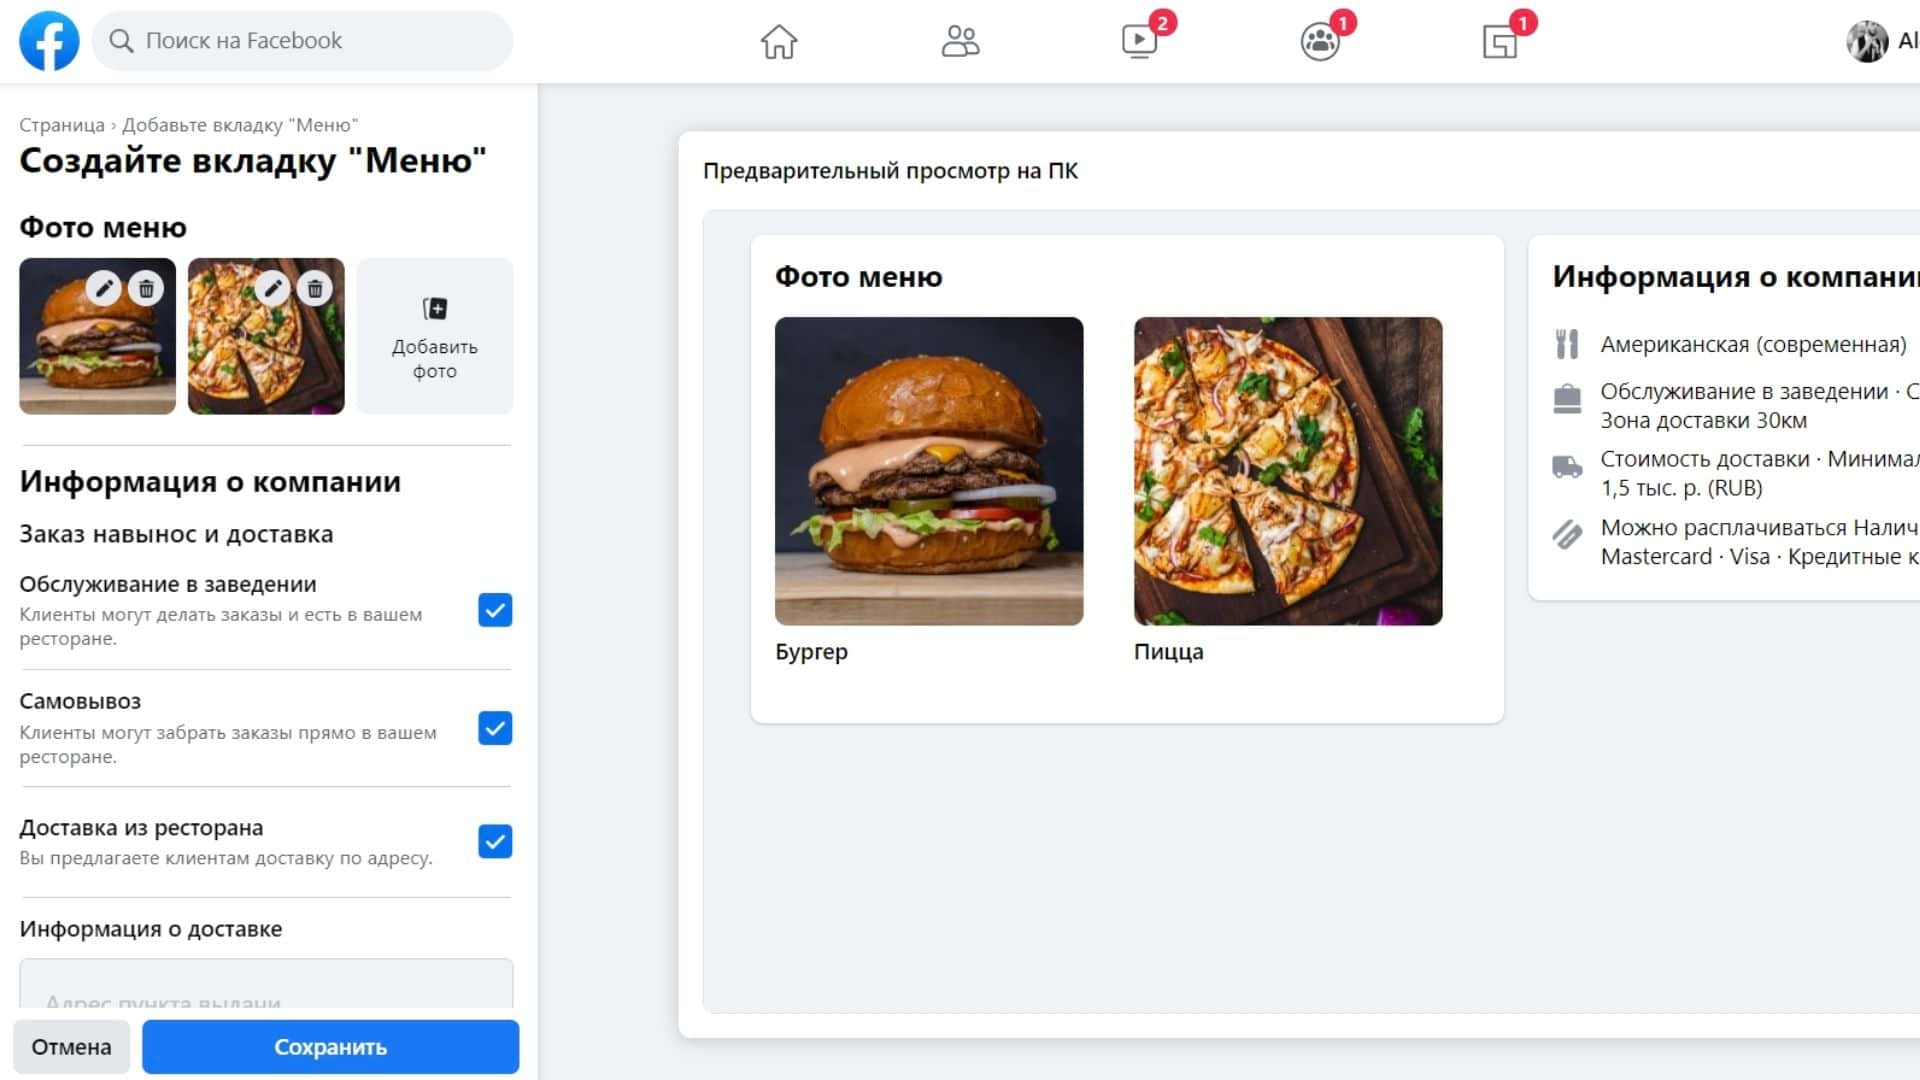 Фейсбук* предложит сгенерировать QR-код, который можно распечатать и разместить в ресторане – так у вас появится «цифровое меню»